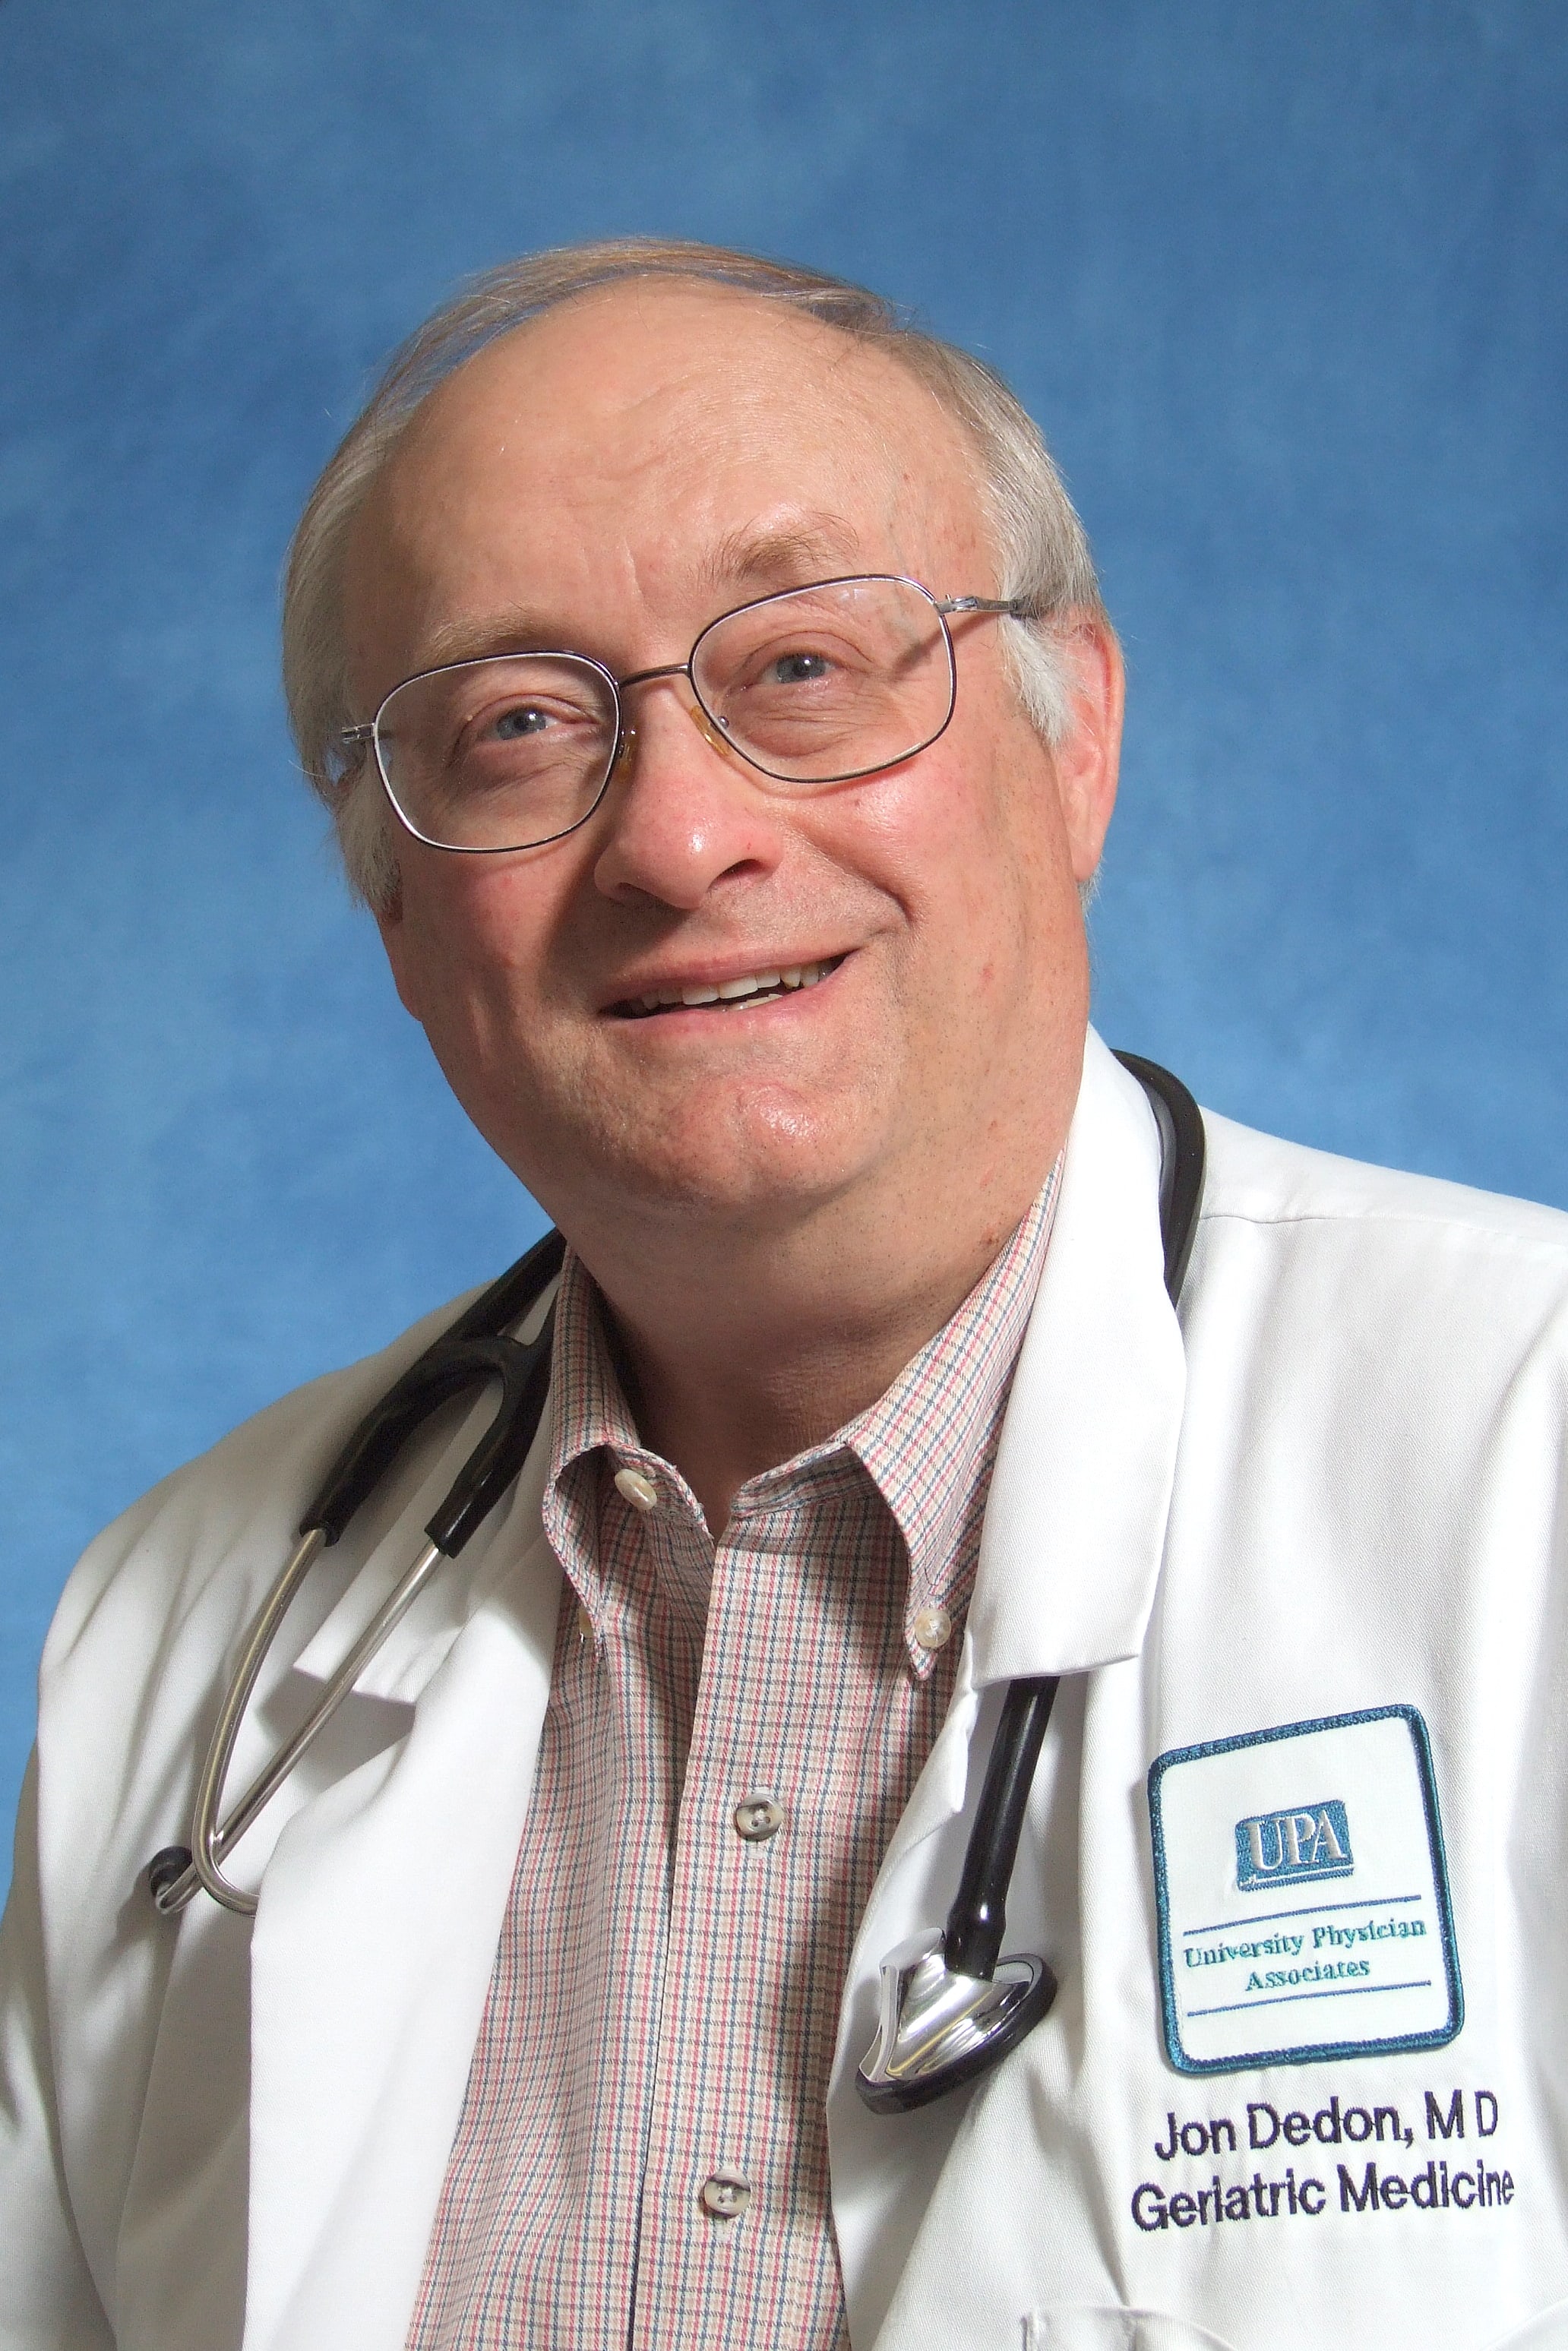 Dr jons urgent care information